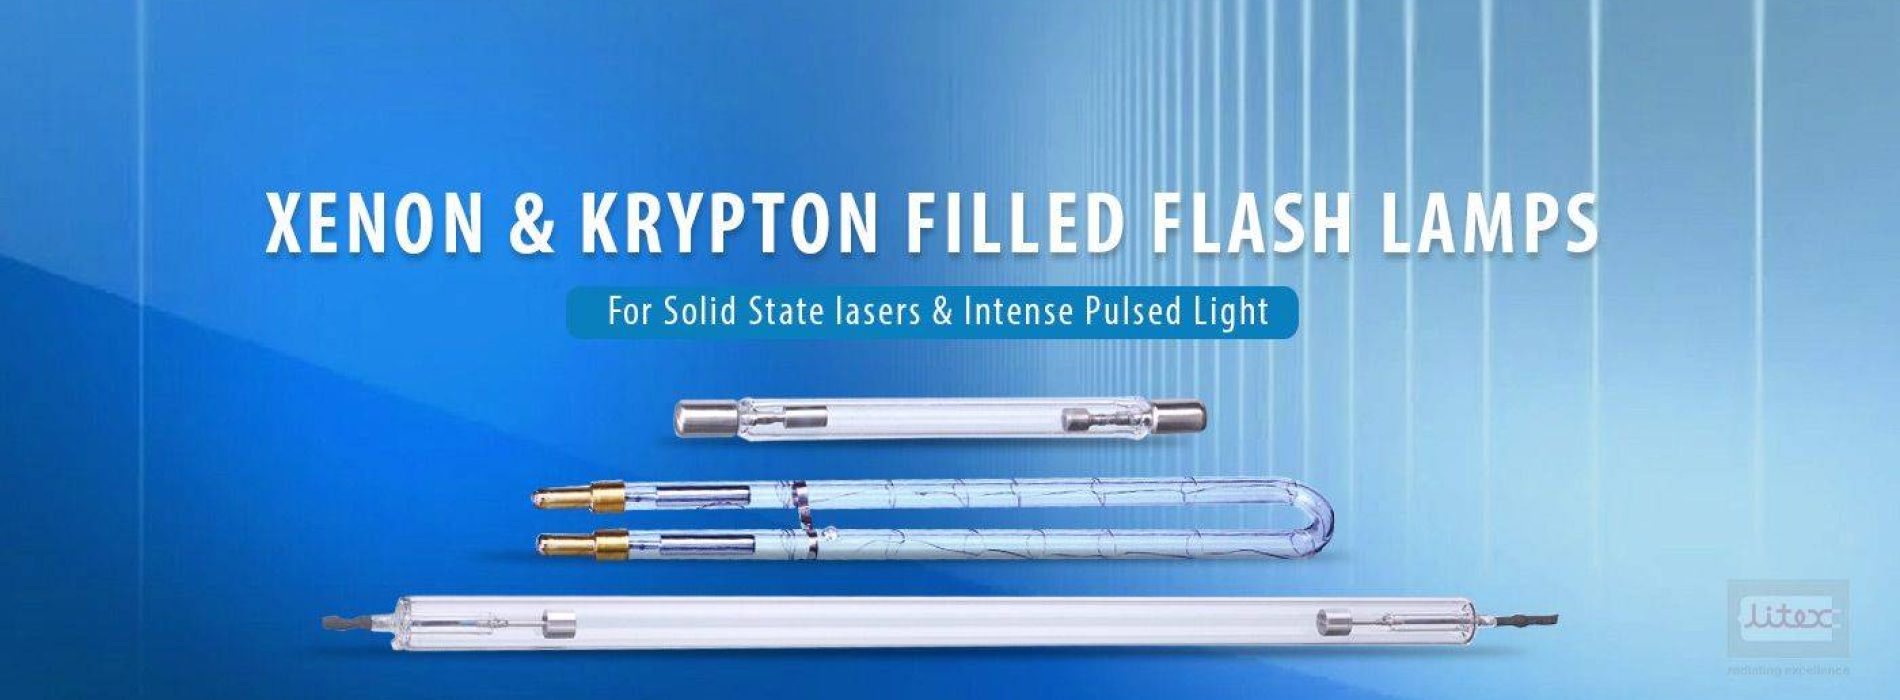 Xenon & Krypton Filled Flash lamps